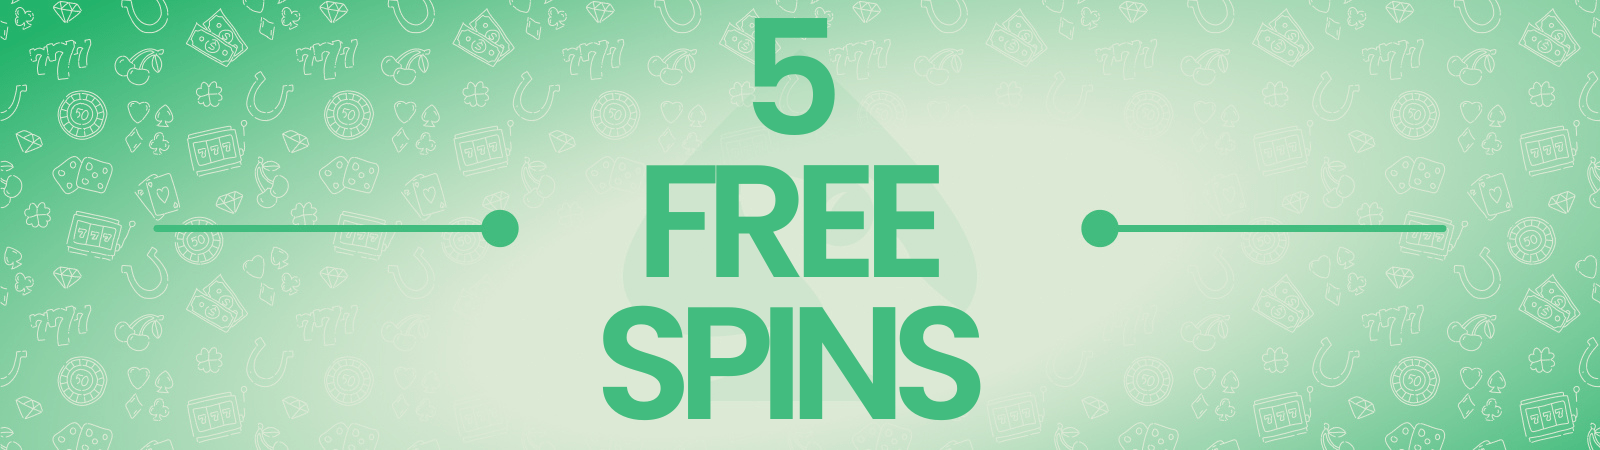 5 free spins on registration no deposit UK